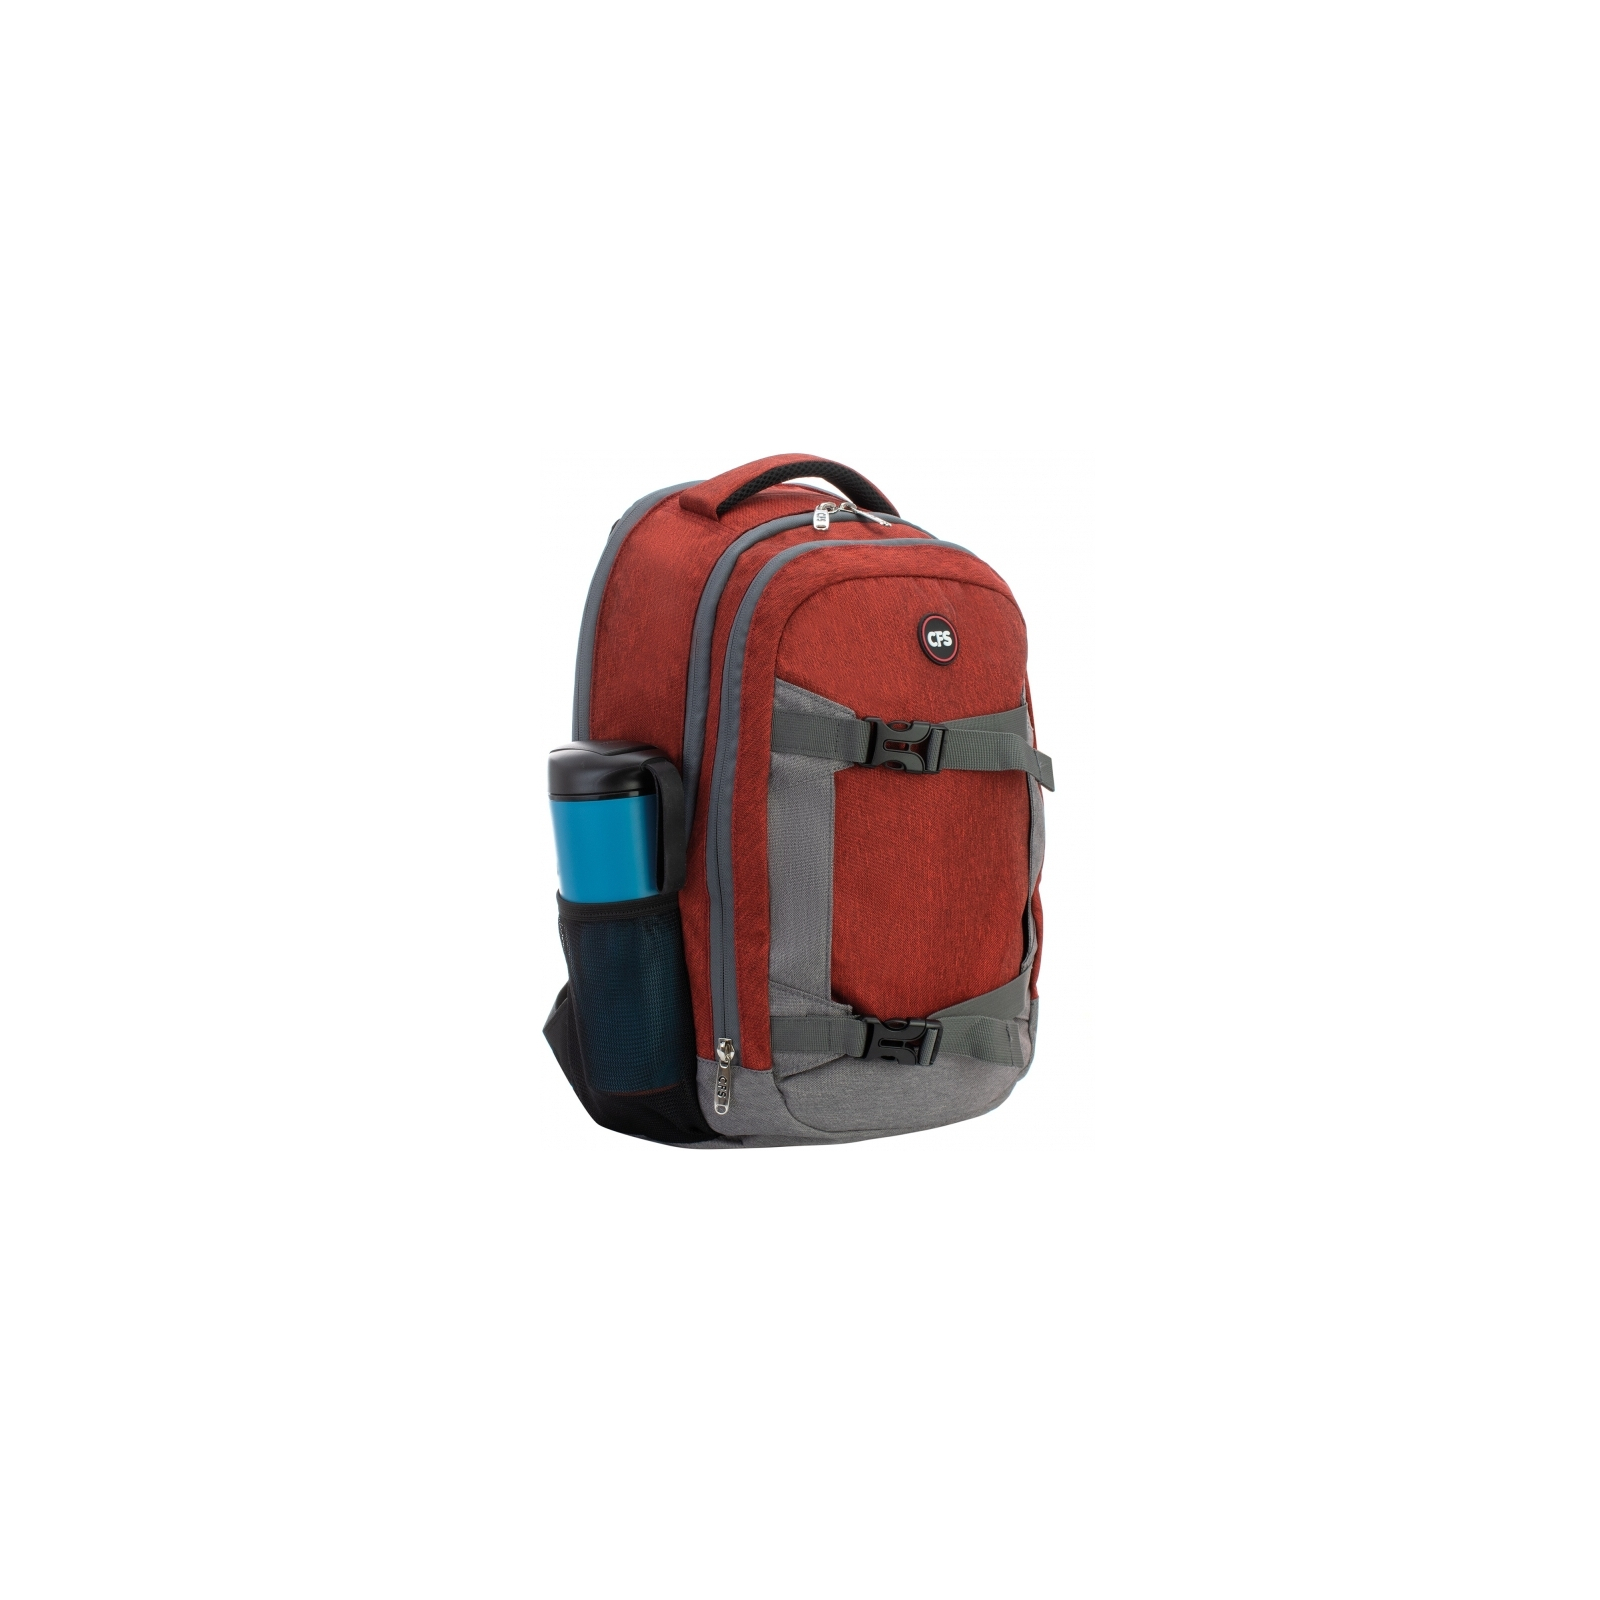 Рюкзак школьный Cool For School 43 x 28 x 15 см 18 л Красно-серый (CF86347) изображение 4